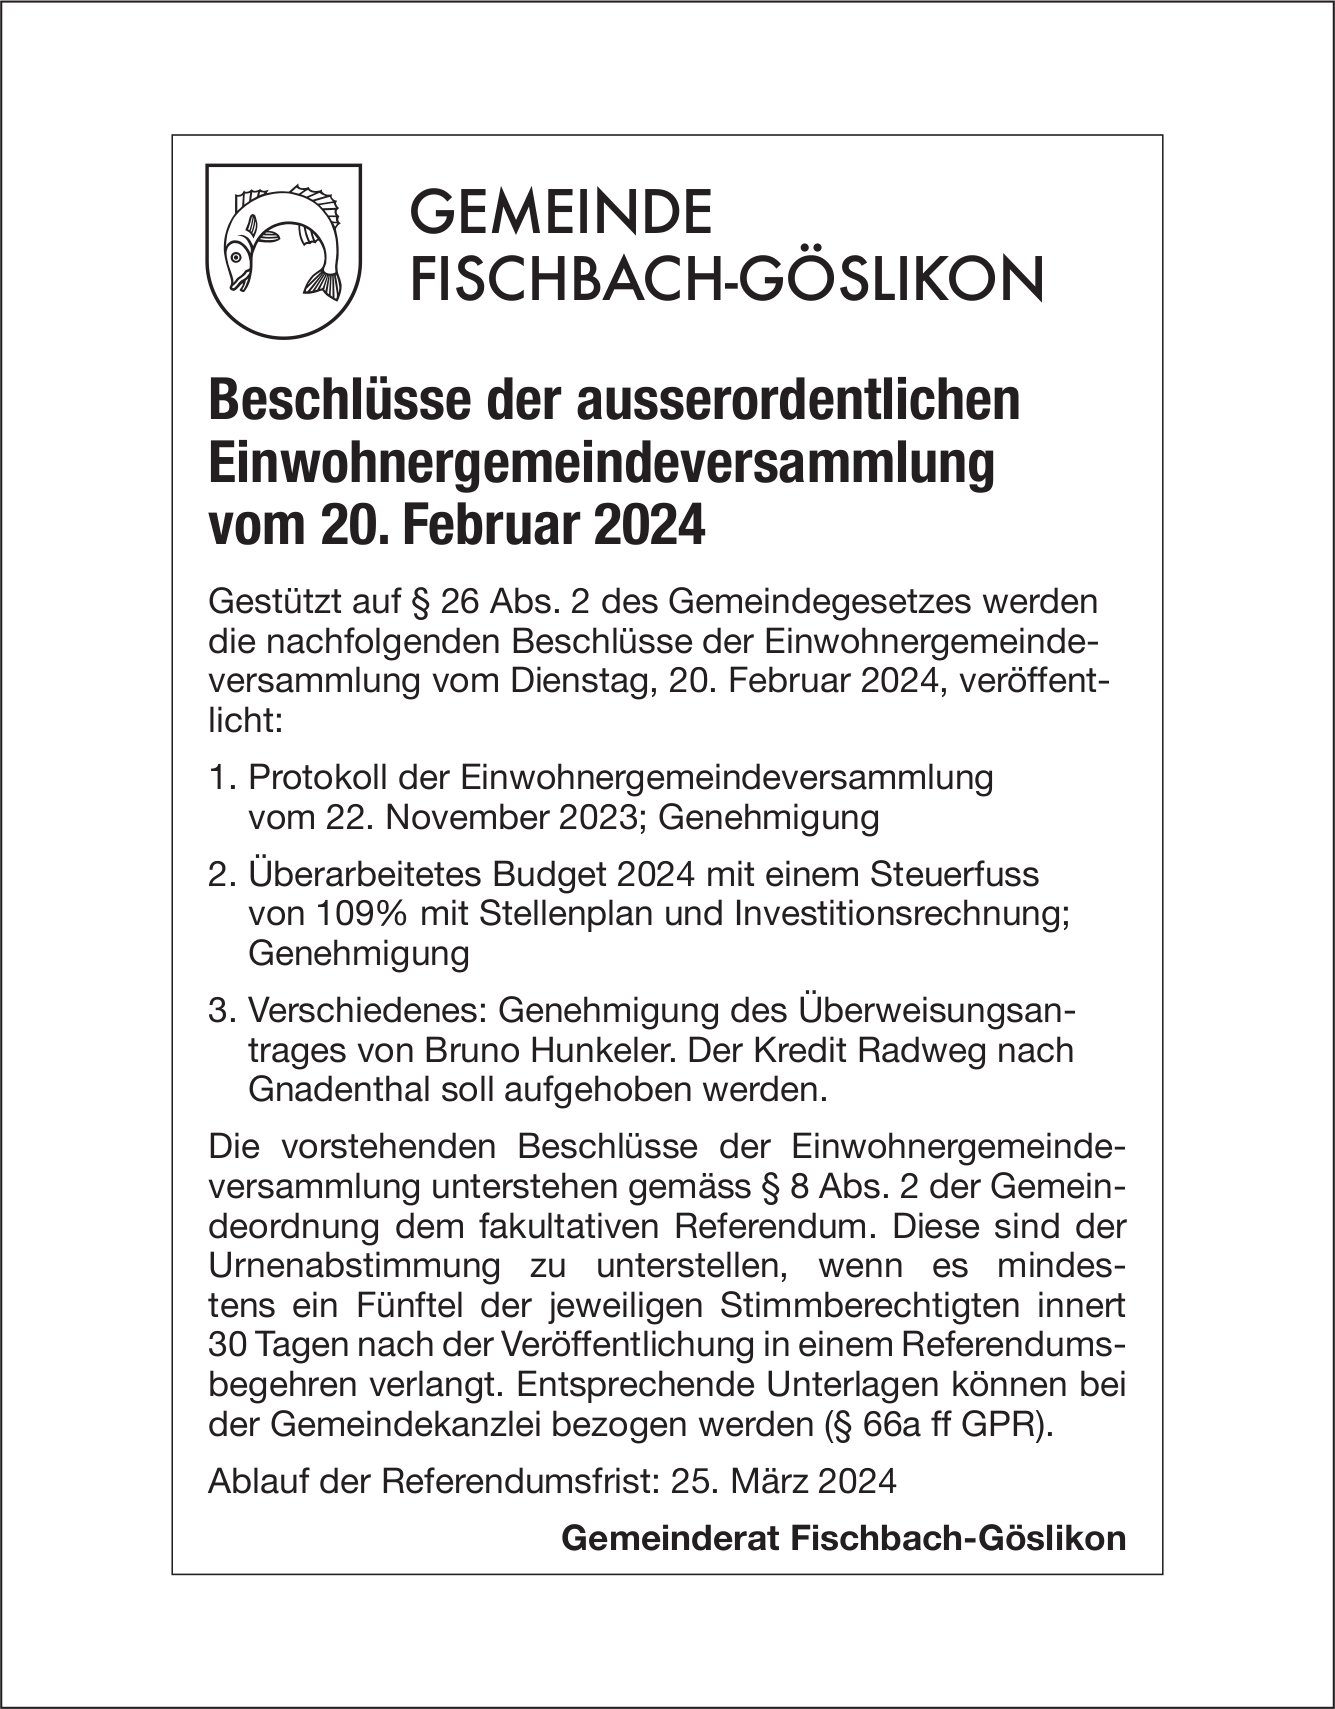 Fischbach-Göslikon - Beschlüsse der ausserordentlichen Einwohnergemeindeversammlung